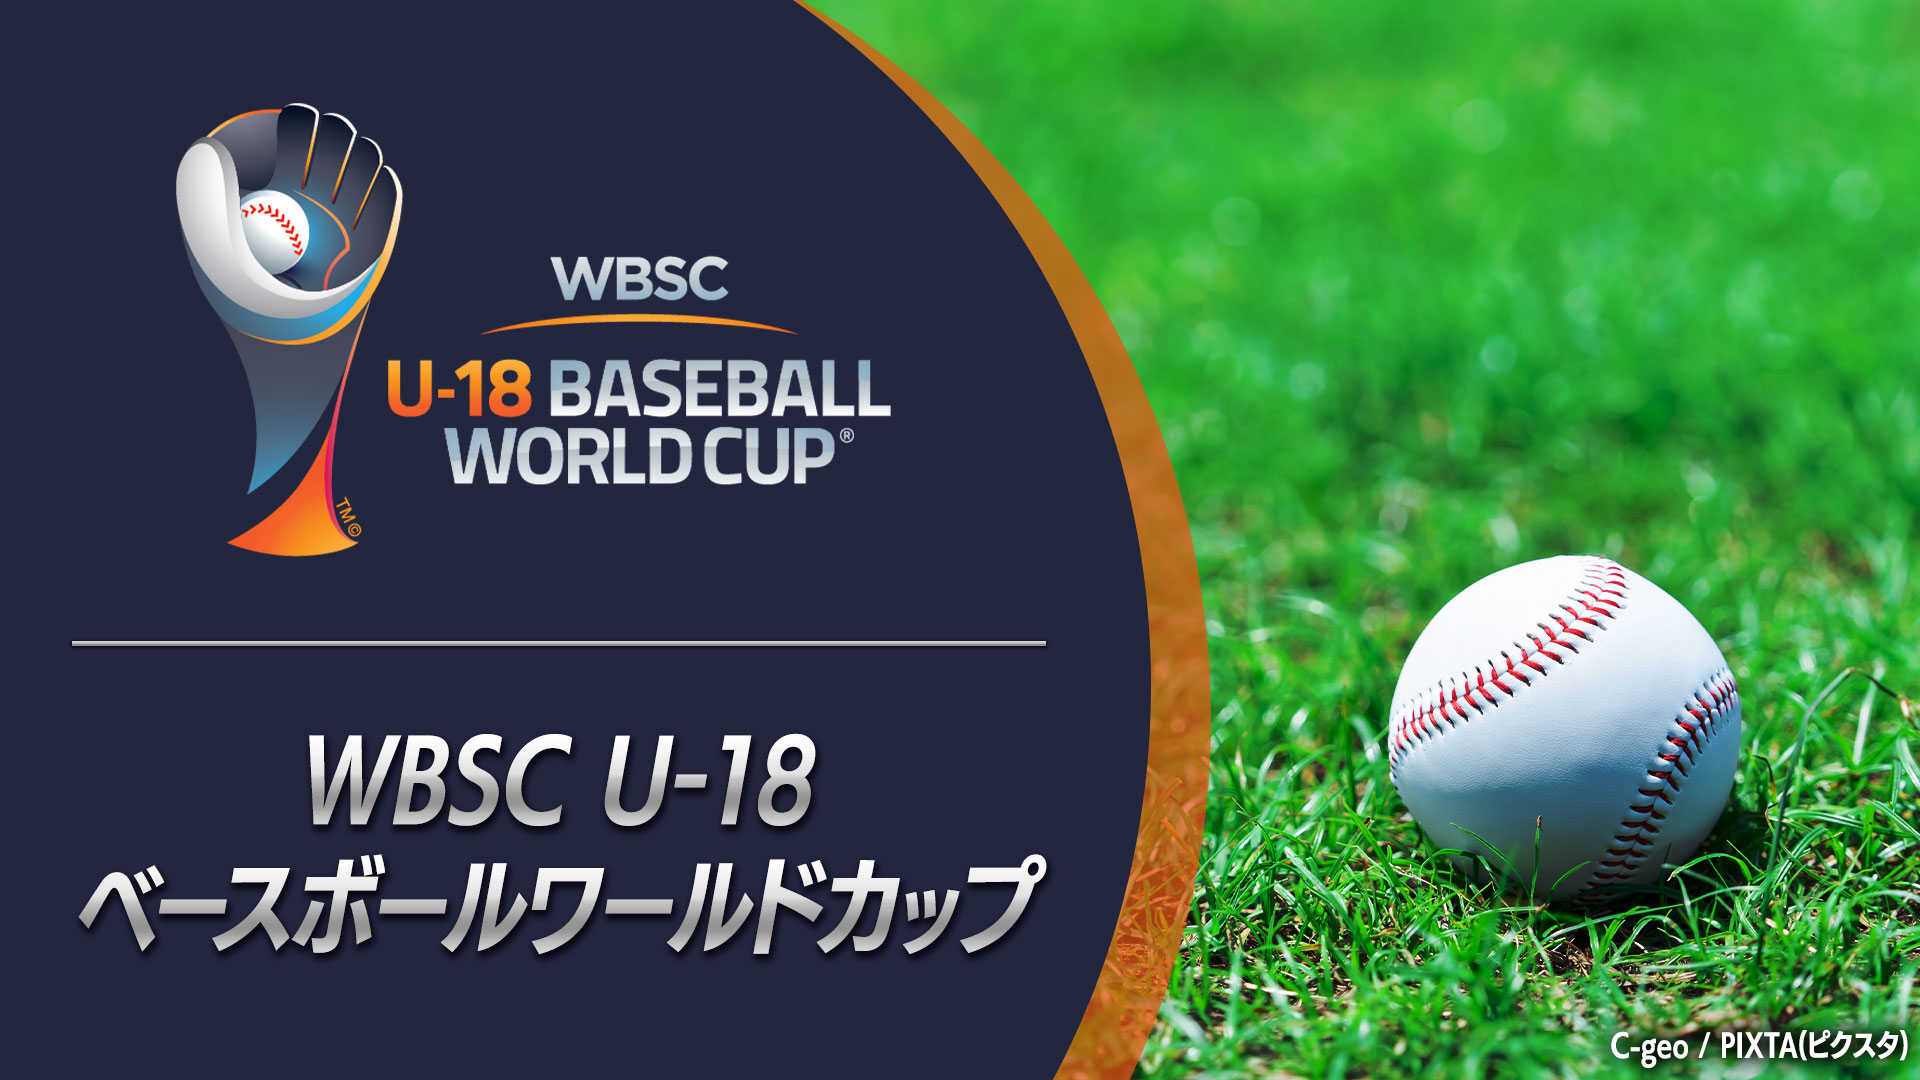 WBSC U-18 ベースボールワールドカップ